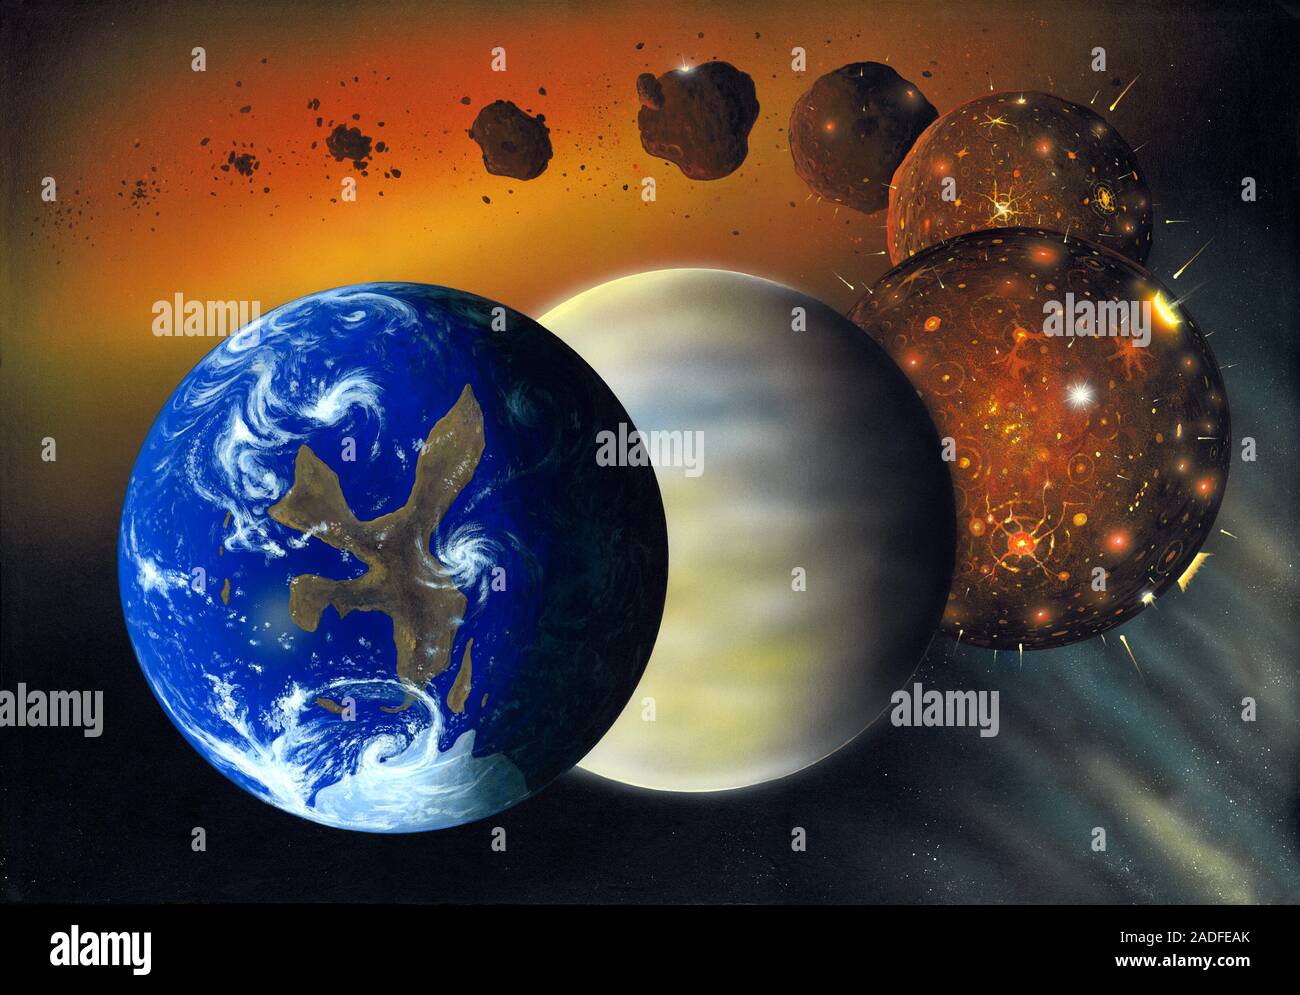 La formazione della Terra. Sequenza di illustrazioni che mostrano le fasi di  formazione della Terra. In alto a sinistra, piccoli frammenti di roccia e  polvere rifornito un Foto stock - Alamy